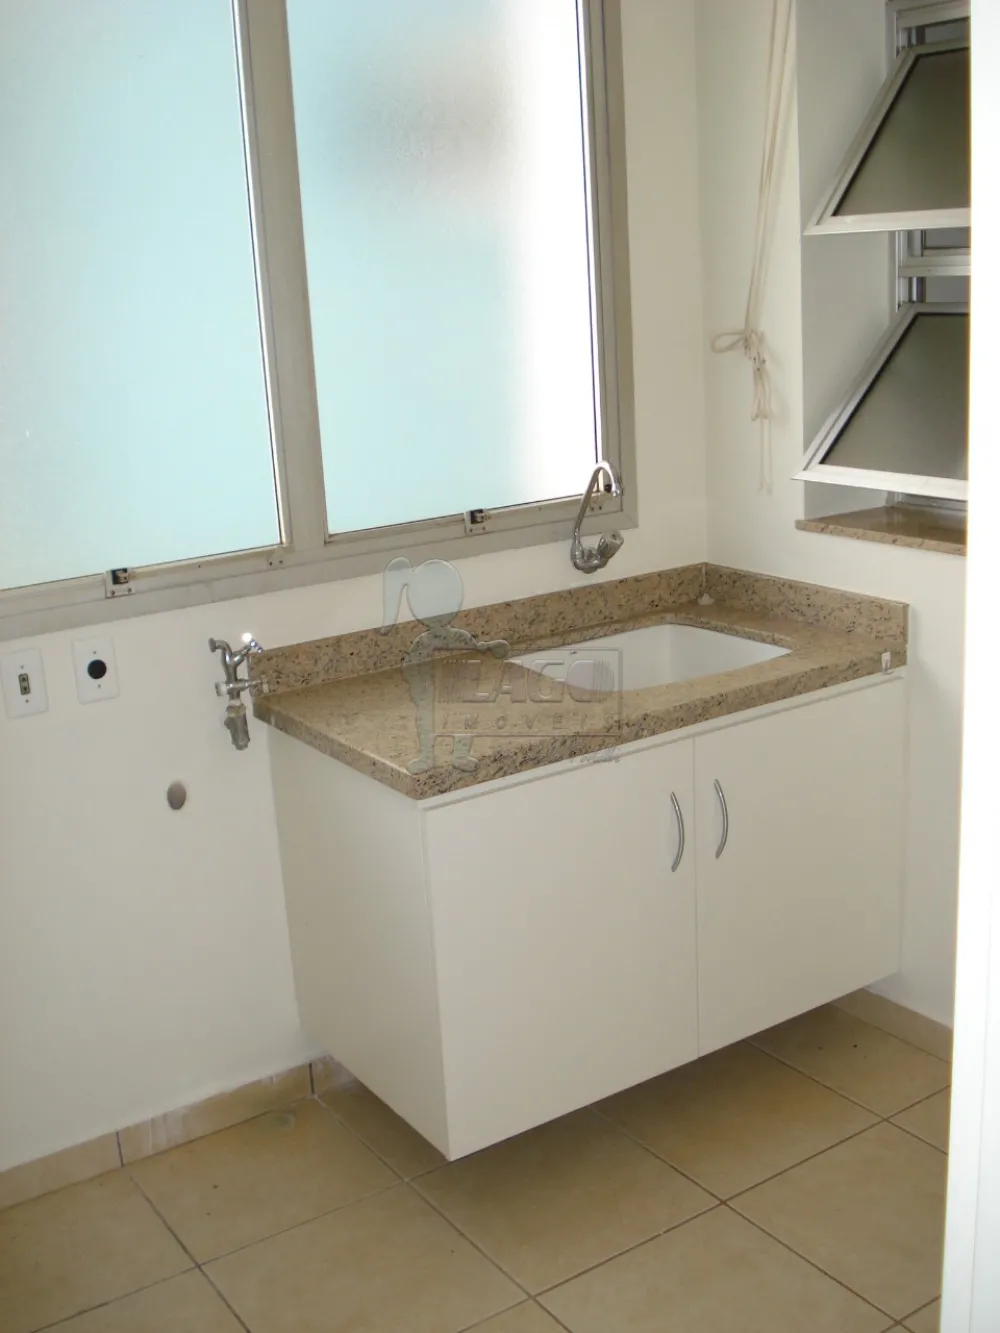 Comprar Apartamentos / Padrão em Ribeirão Preto R$ 430.000,00 - Foto 15